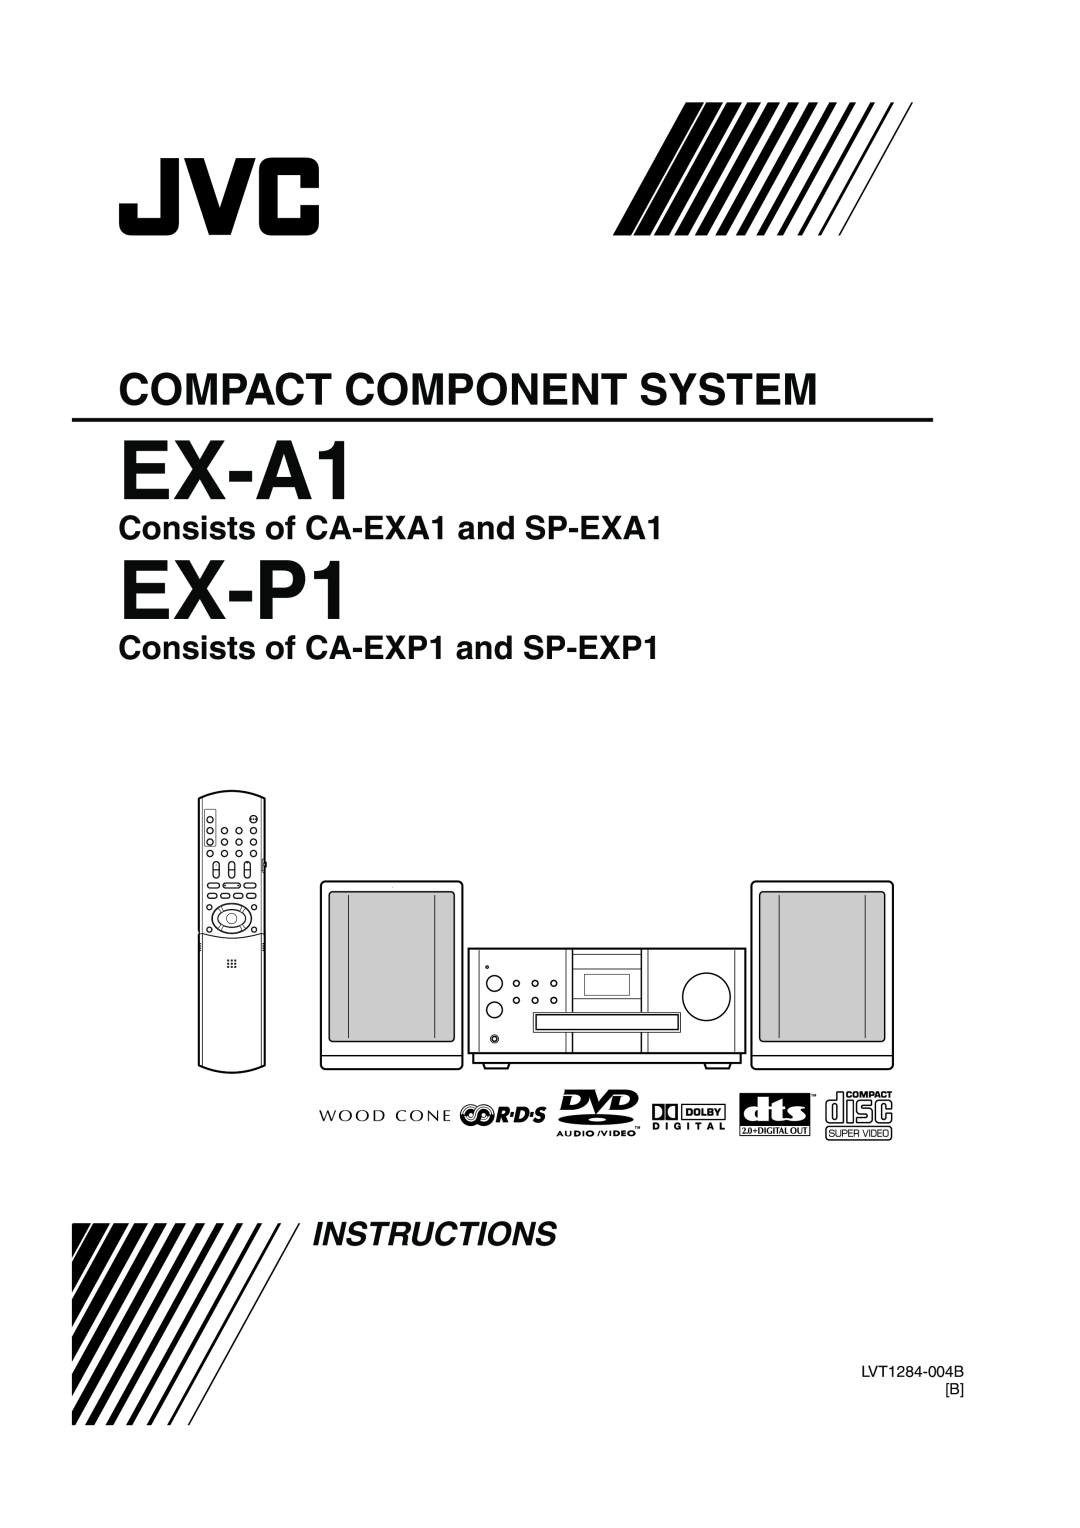 JVC LVT1284-004B manual Consists of CA-EXA1and SP-EXA1, Consists of CA-EXP1and SP-EXP1, EX-A1, EX-P1, Instructions 